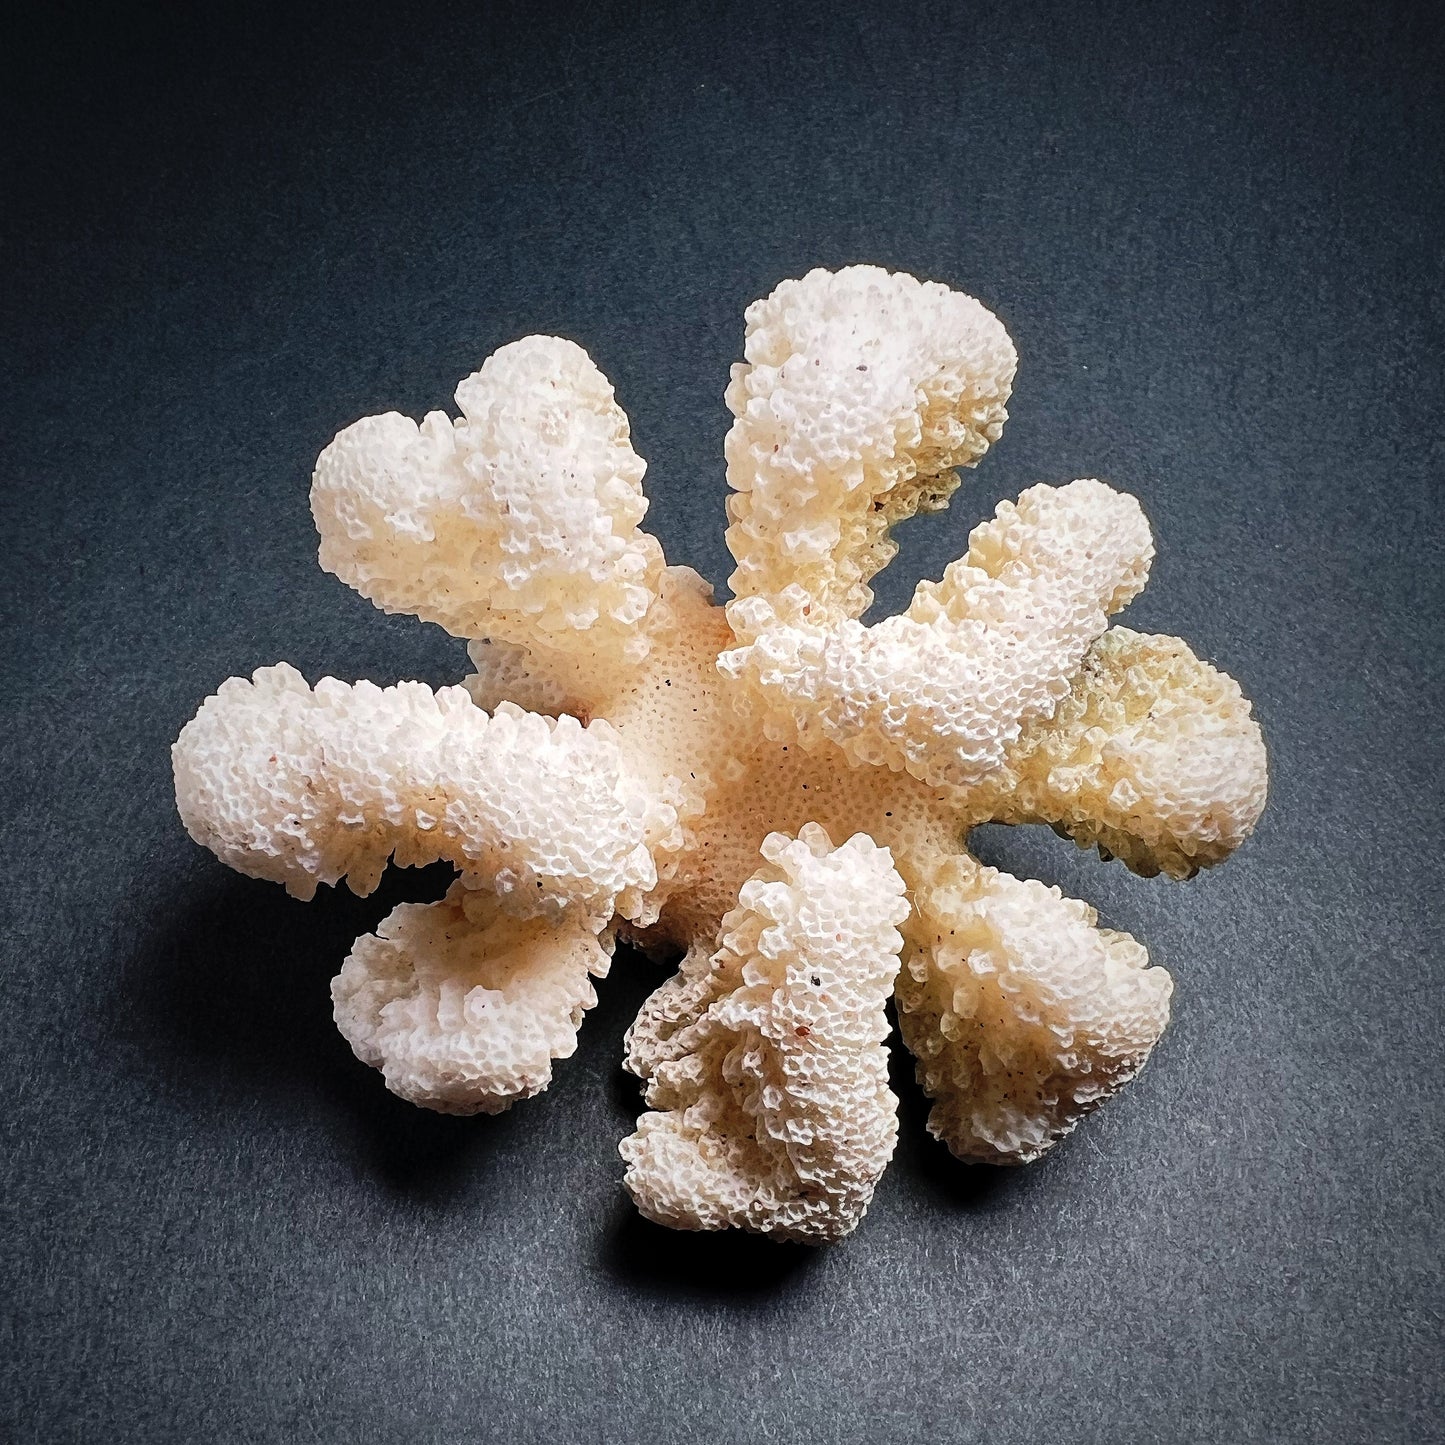 Coral - Pocillopora meandrina, M size